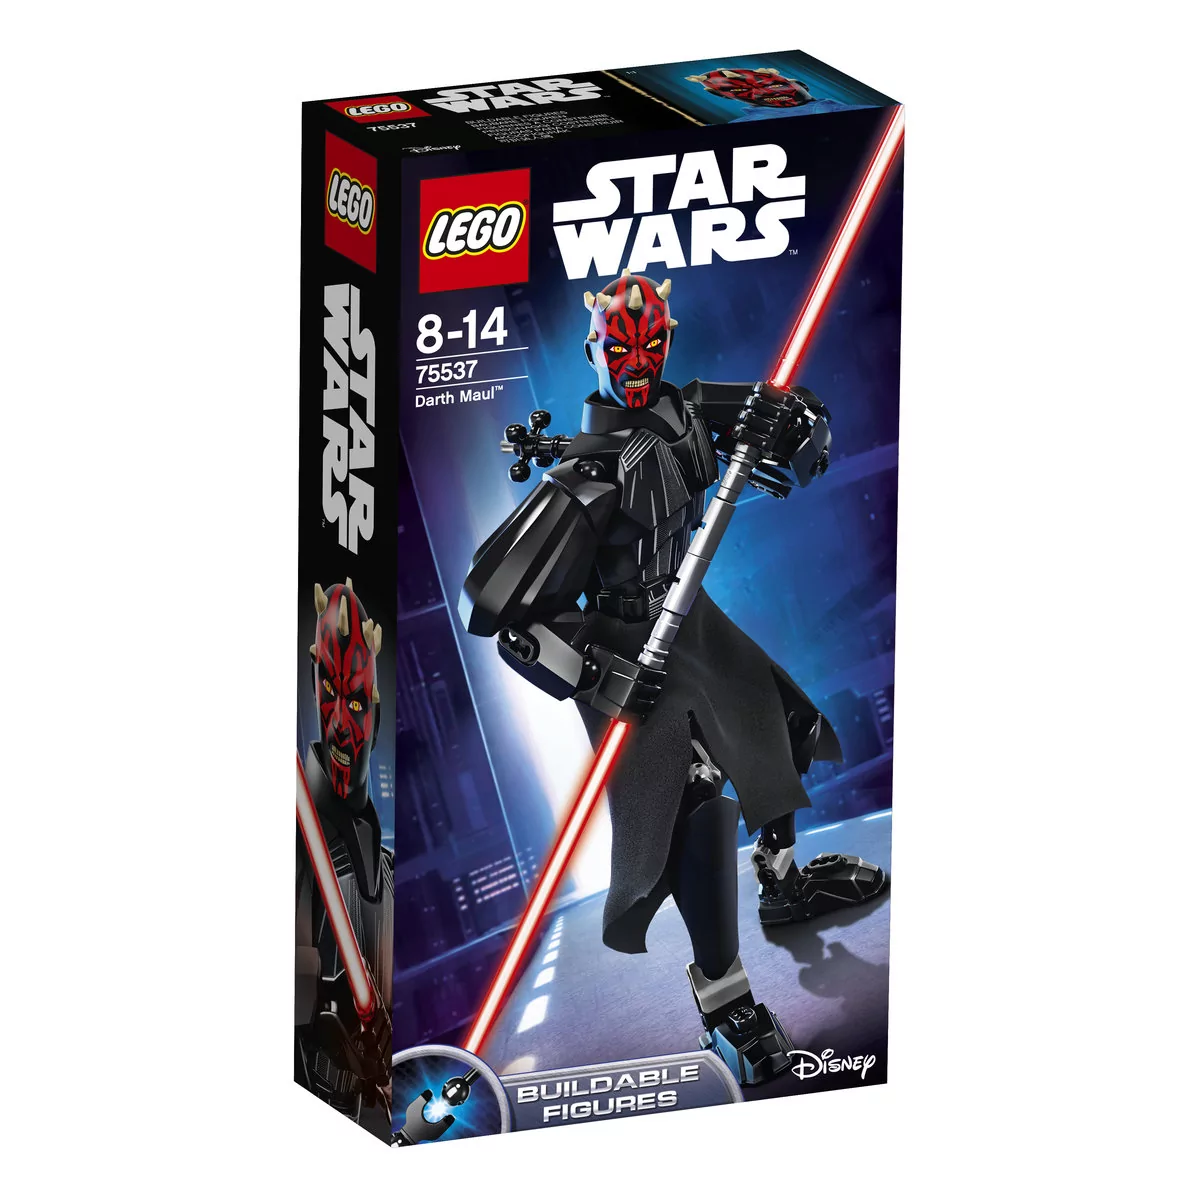 LEGO Star Wars Darth Maul 75537